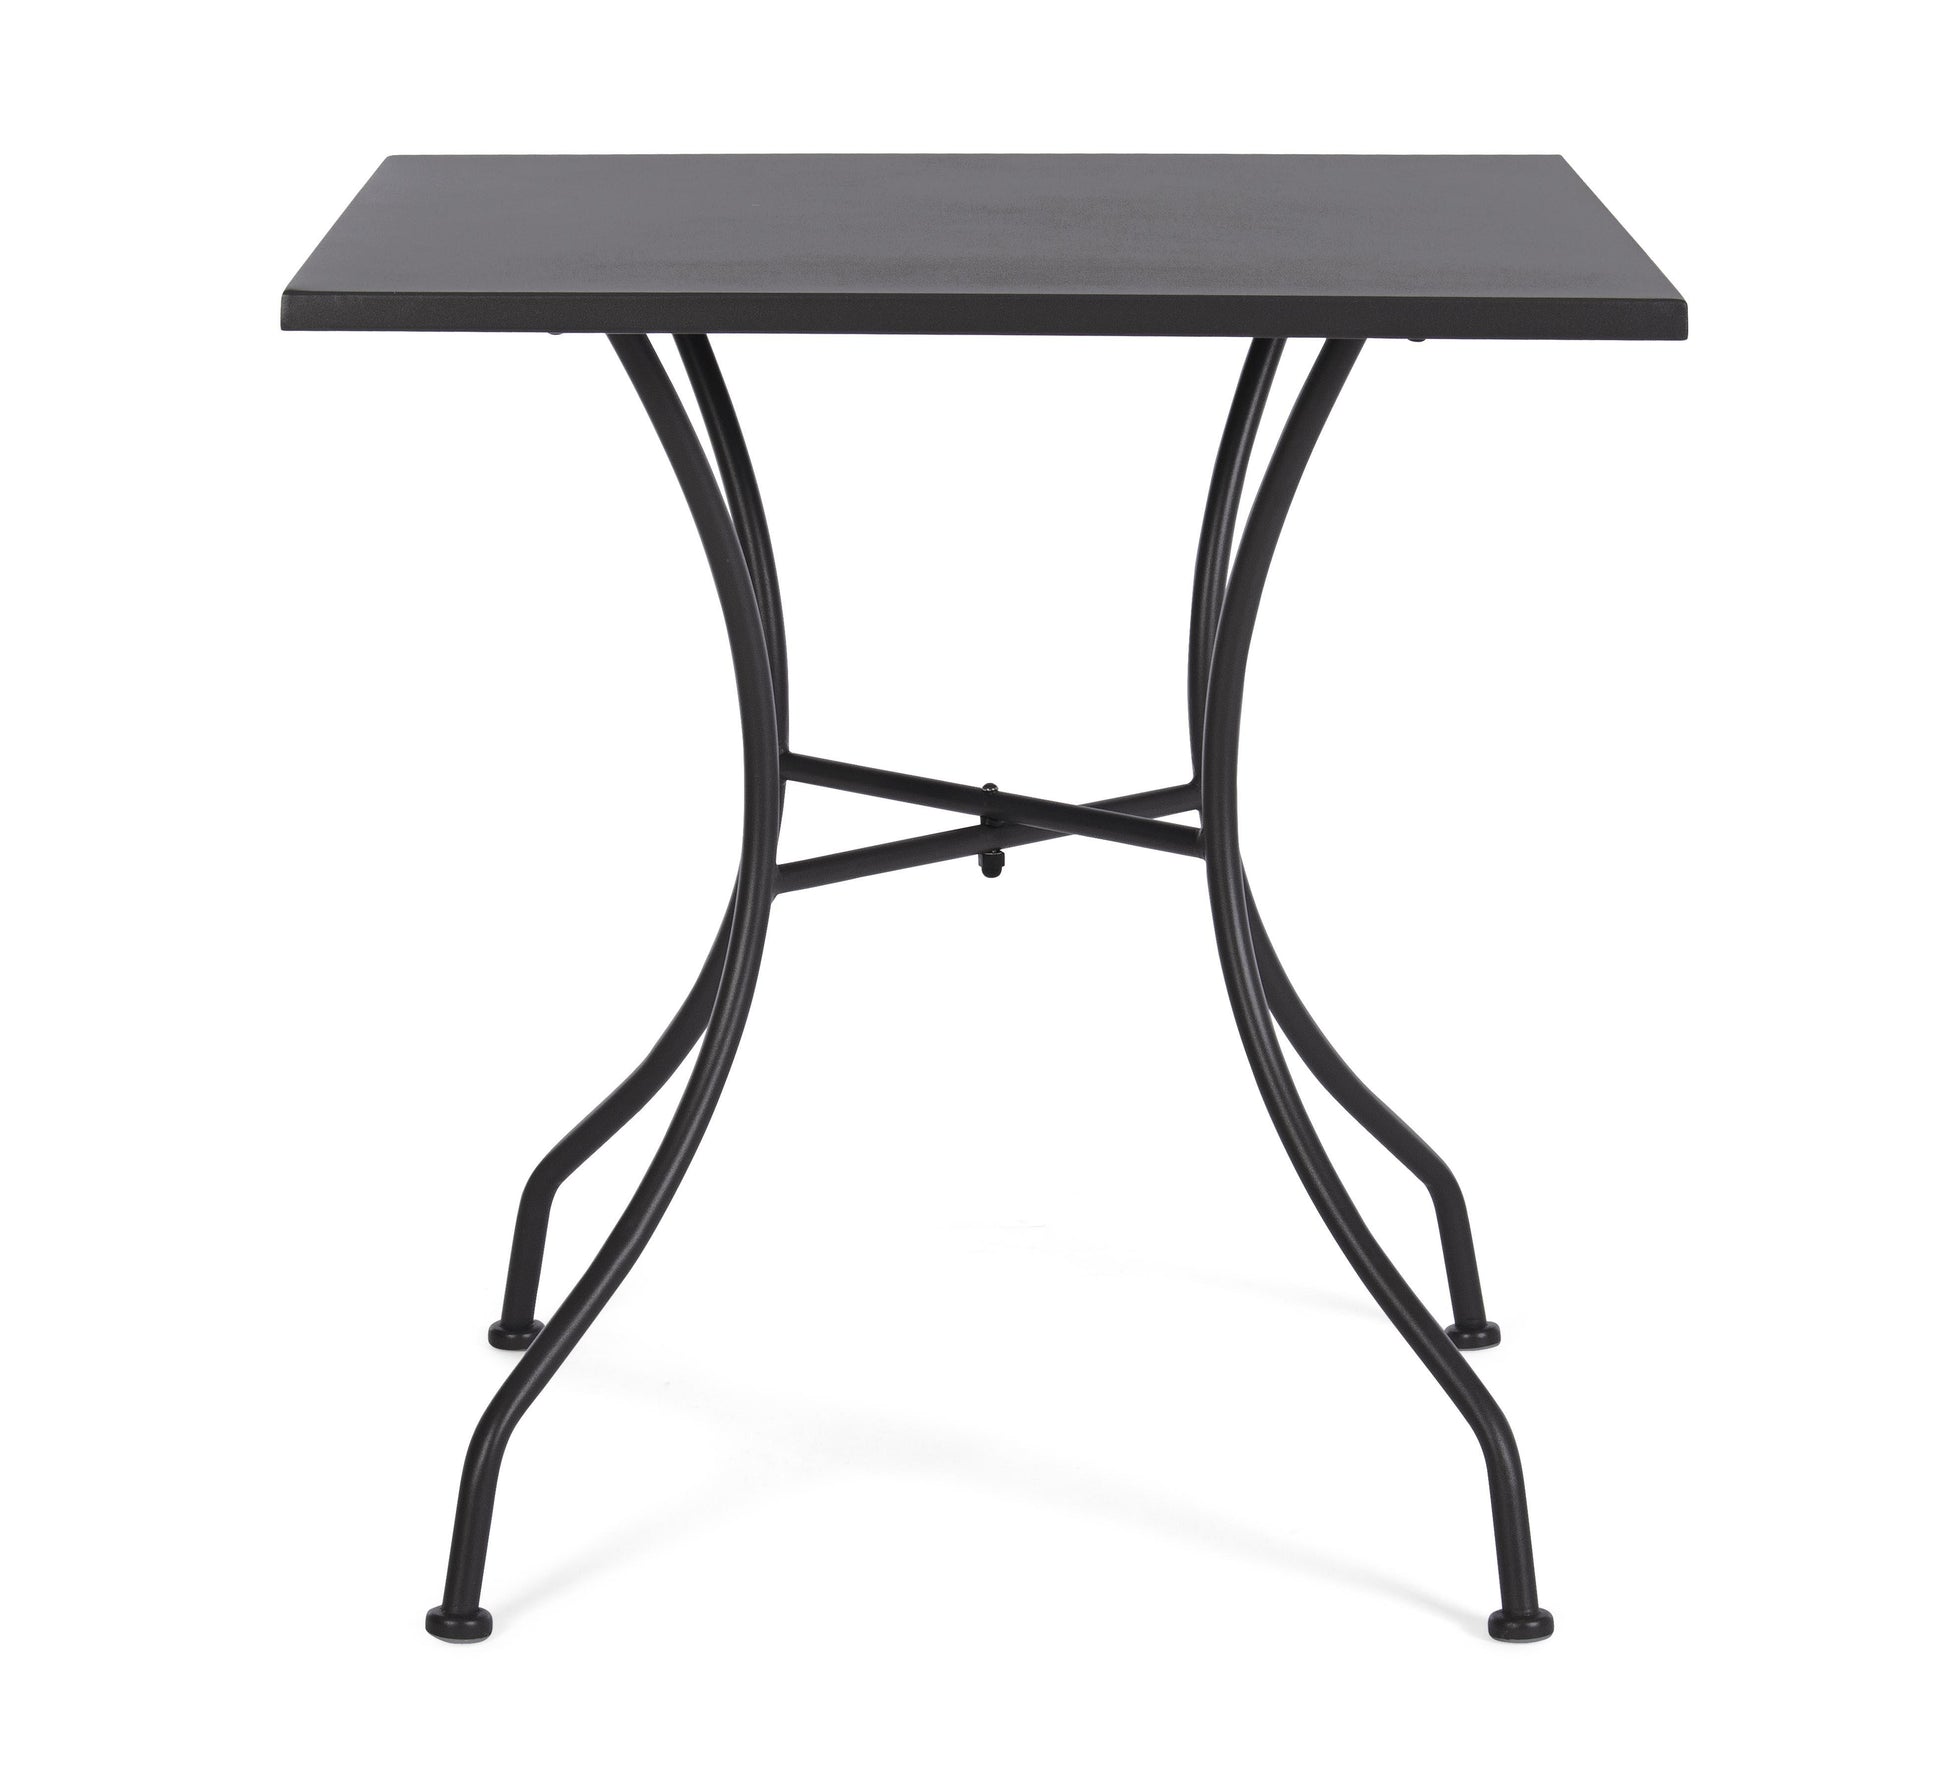 Tavolo rotondo 70x70 per esterno in acciaio verniciato - 5 colori disponibili, Grigio antracite- SPEDIZONE GRATUITA- -lapagoda.net